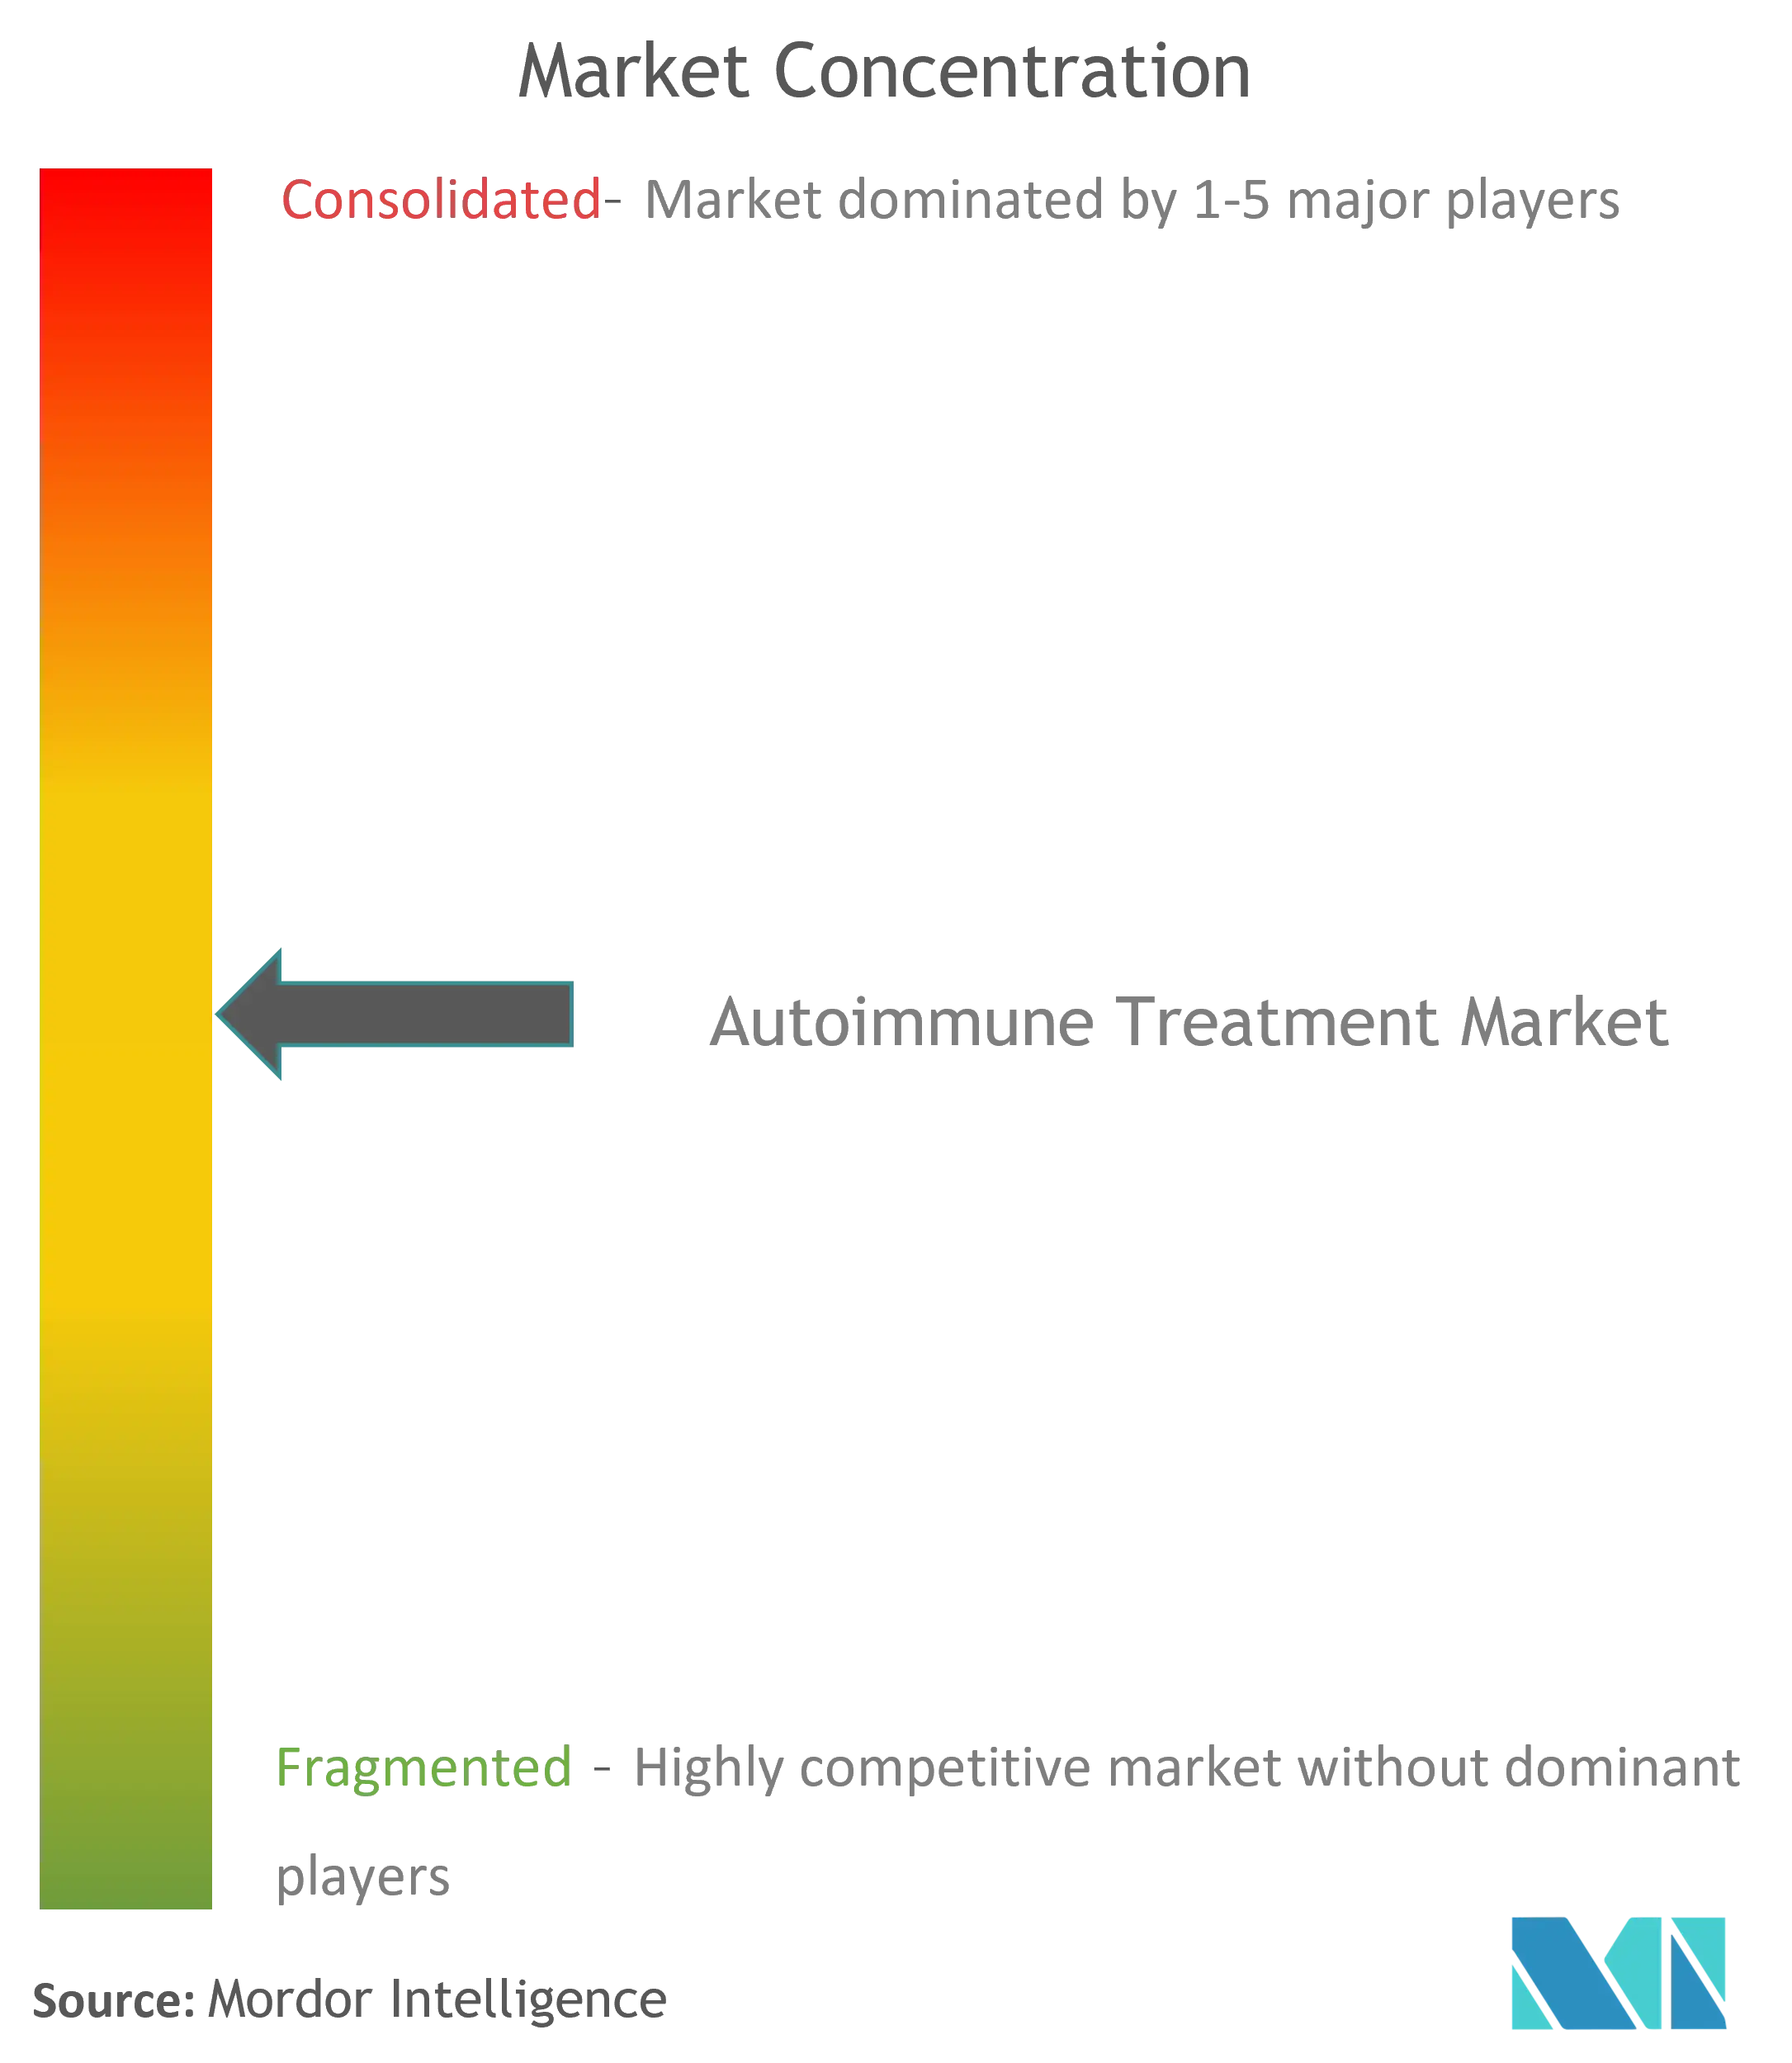 Global Autoimmune Treatment Market Concentration